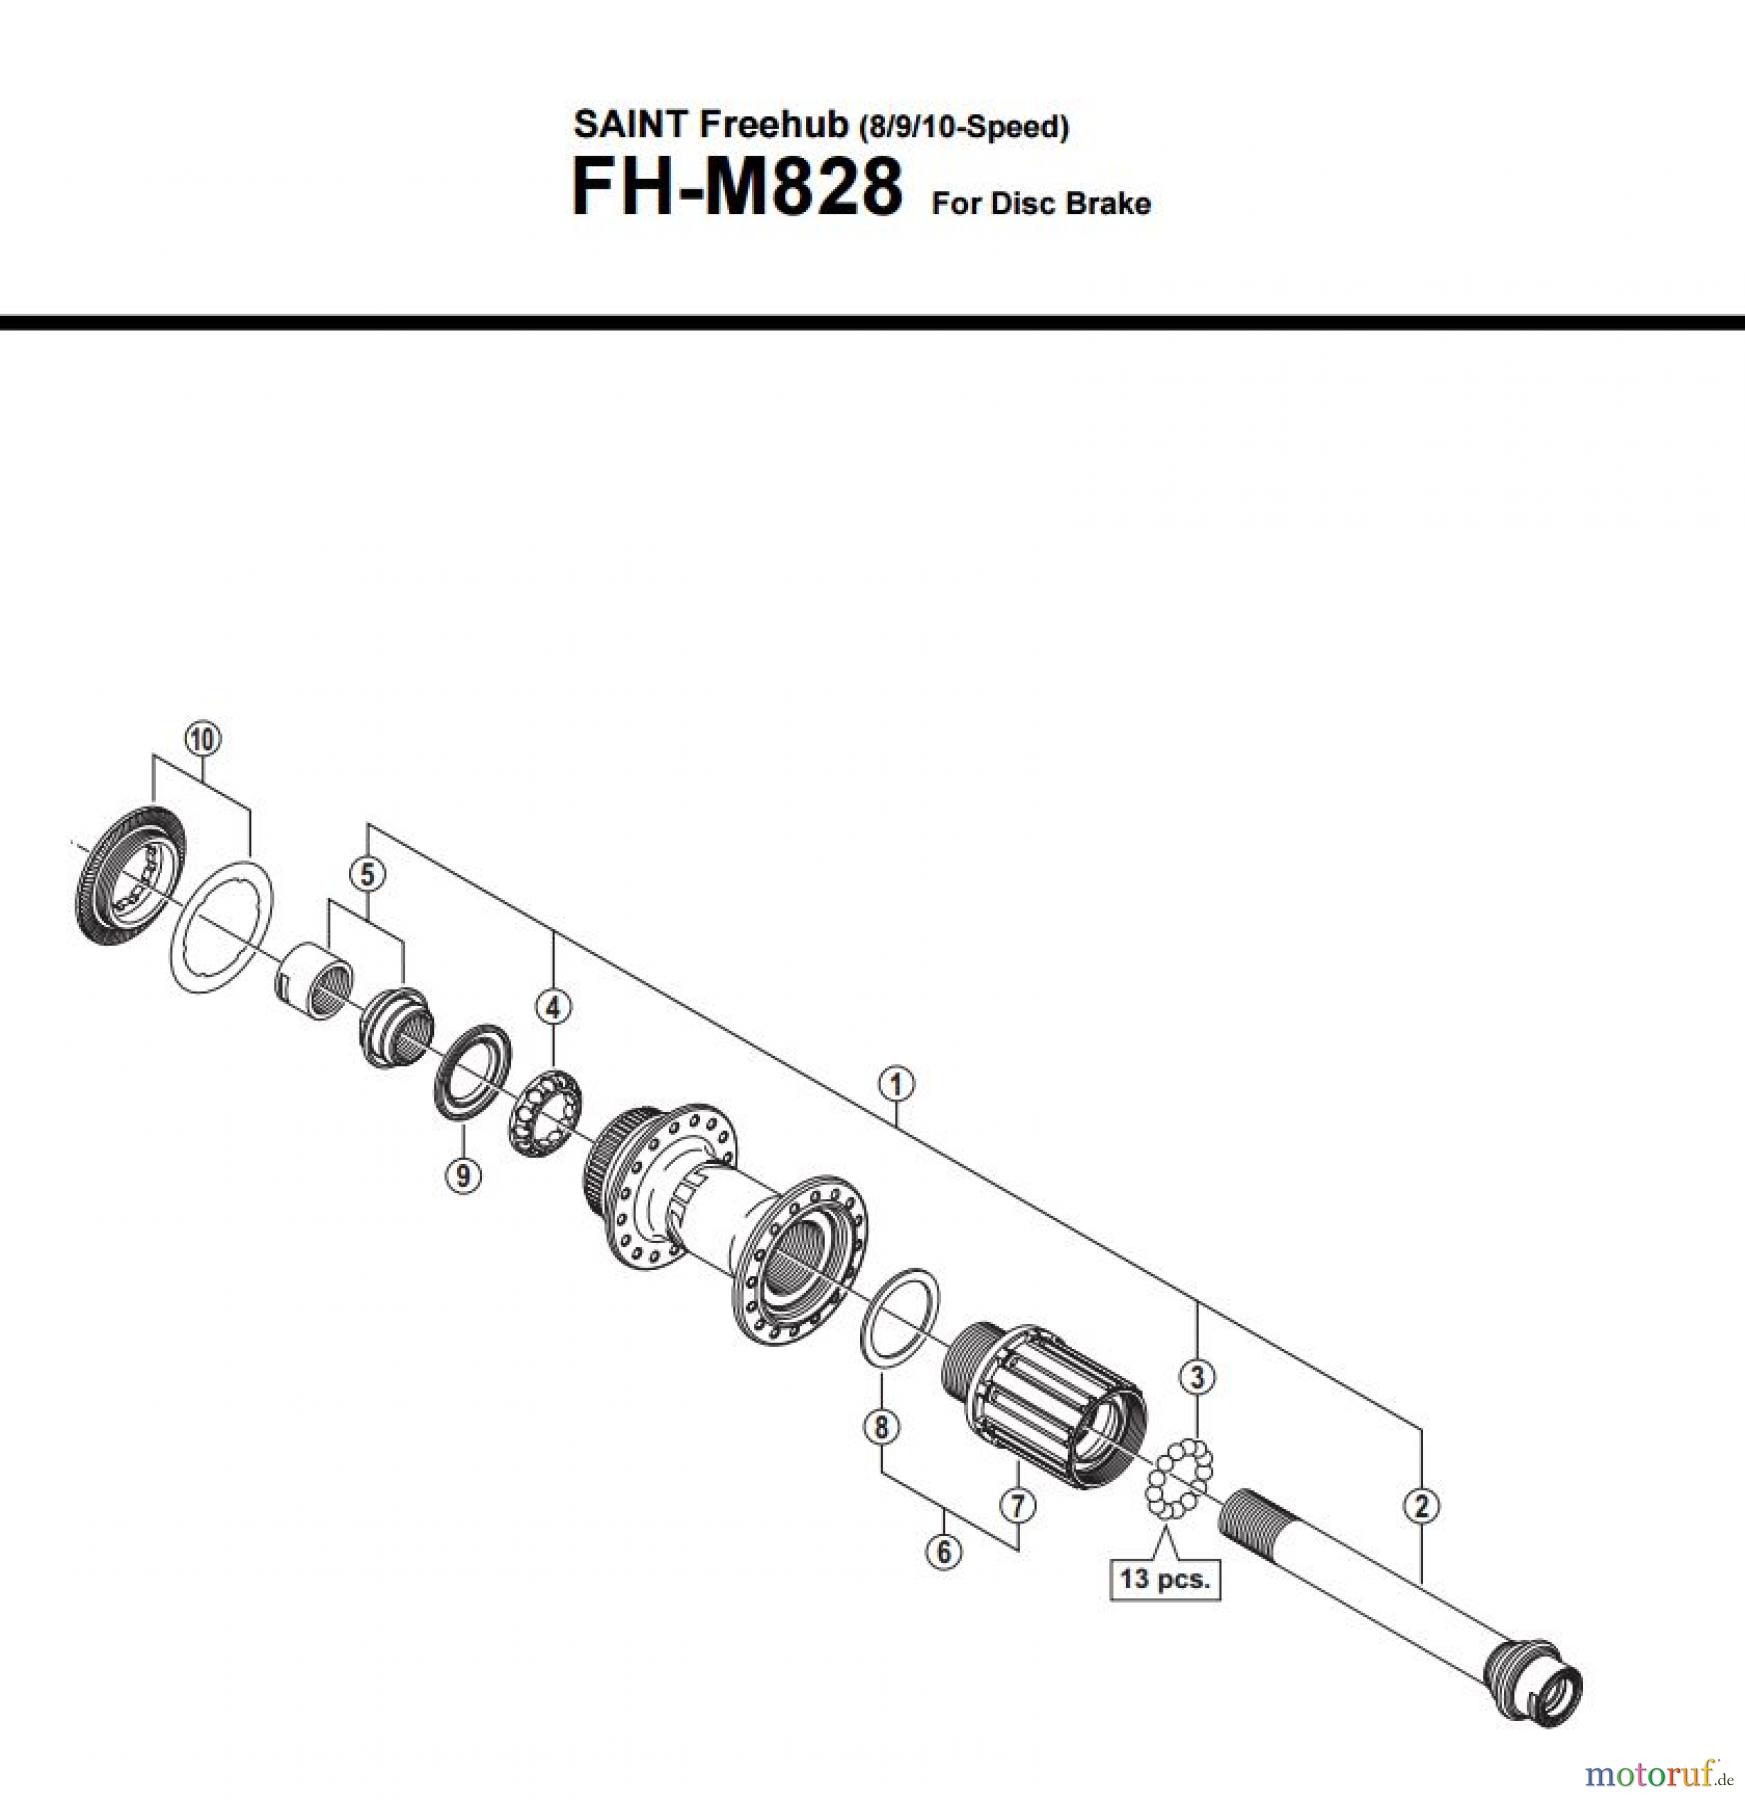  Shimano FH Free Hub - Freilaufnabe FH-M828  SAINT Freehub (8/9/10-Speed)